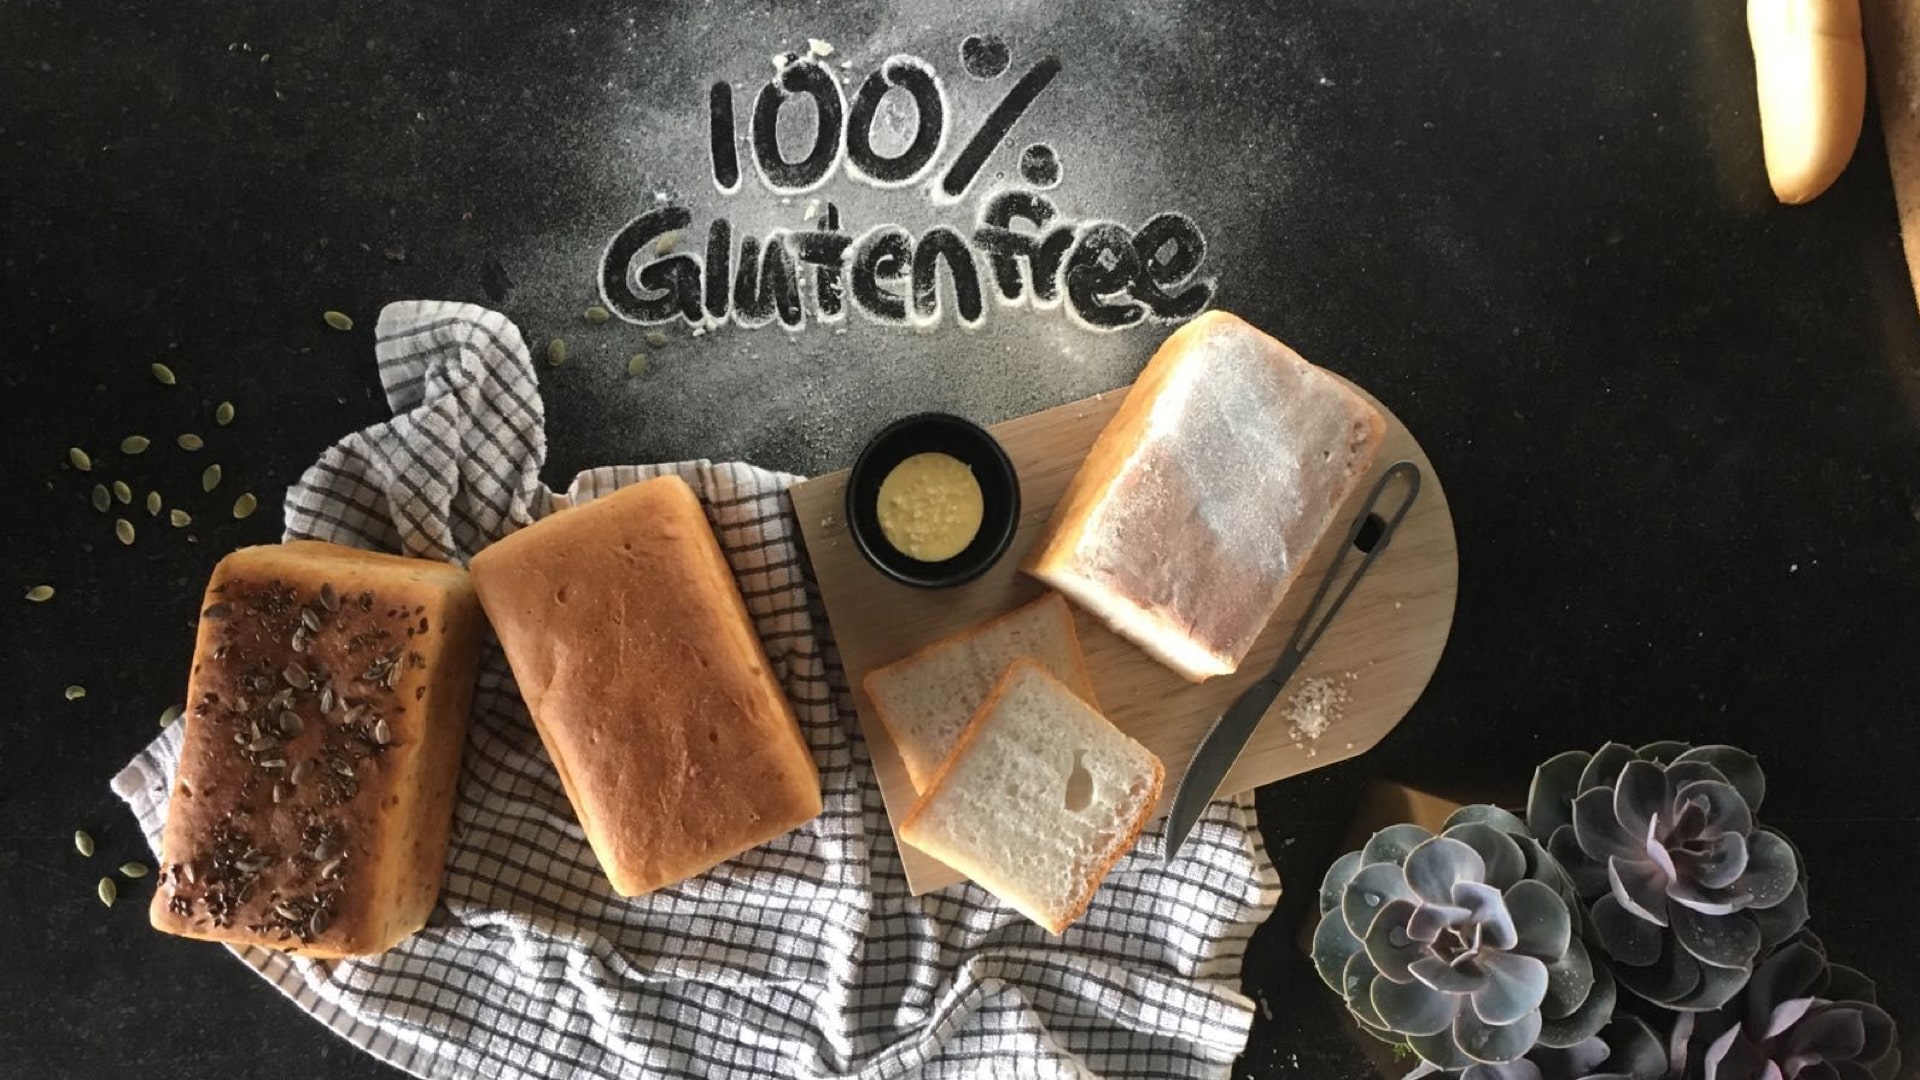 Tawa - Gluten Free Eatery-hero-1920x1080-min